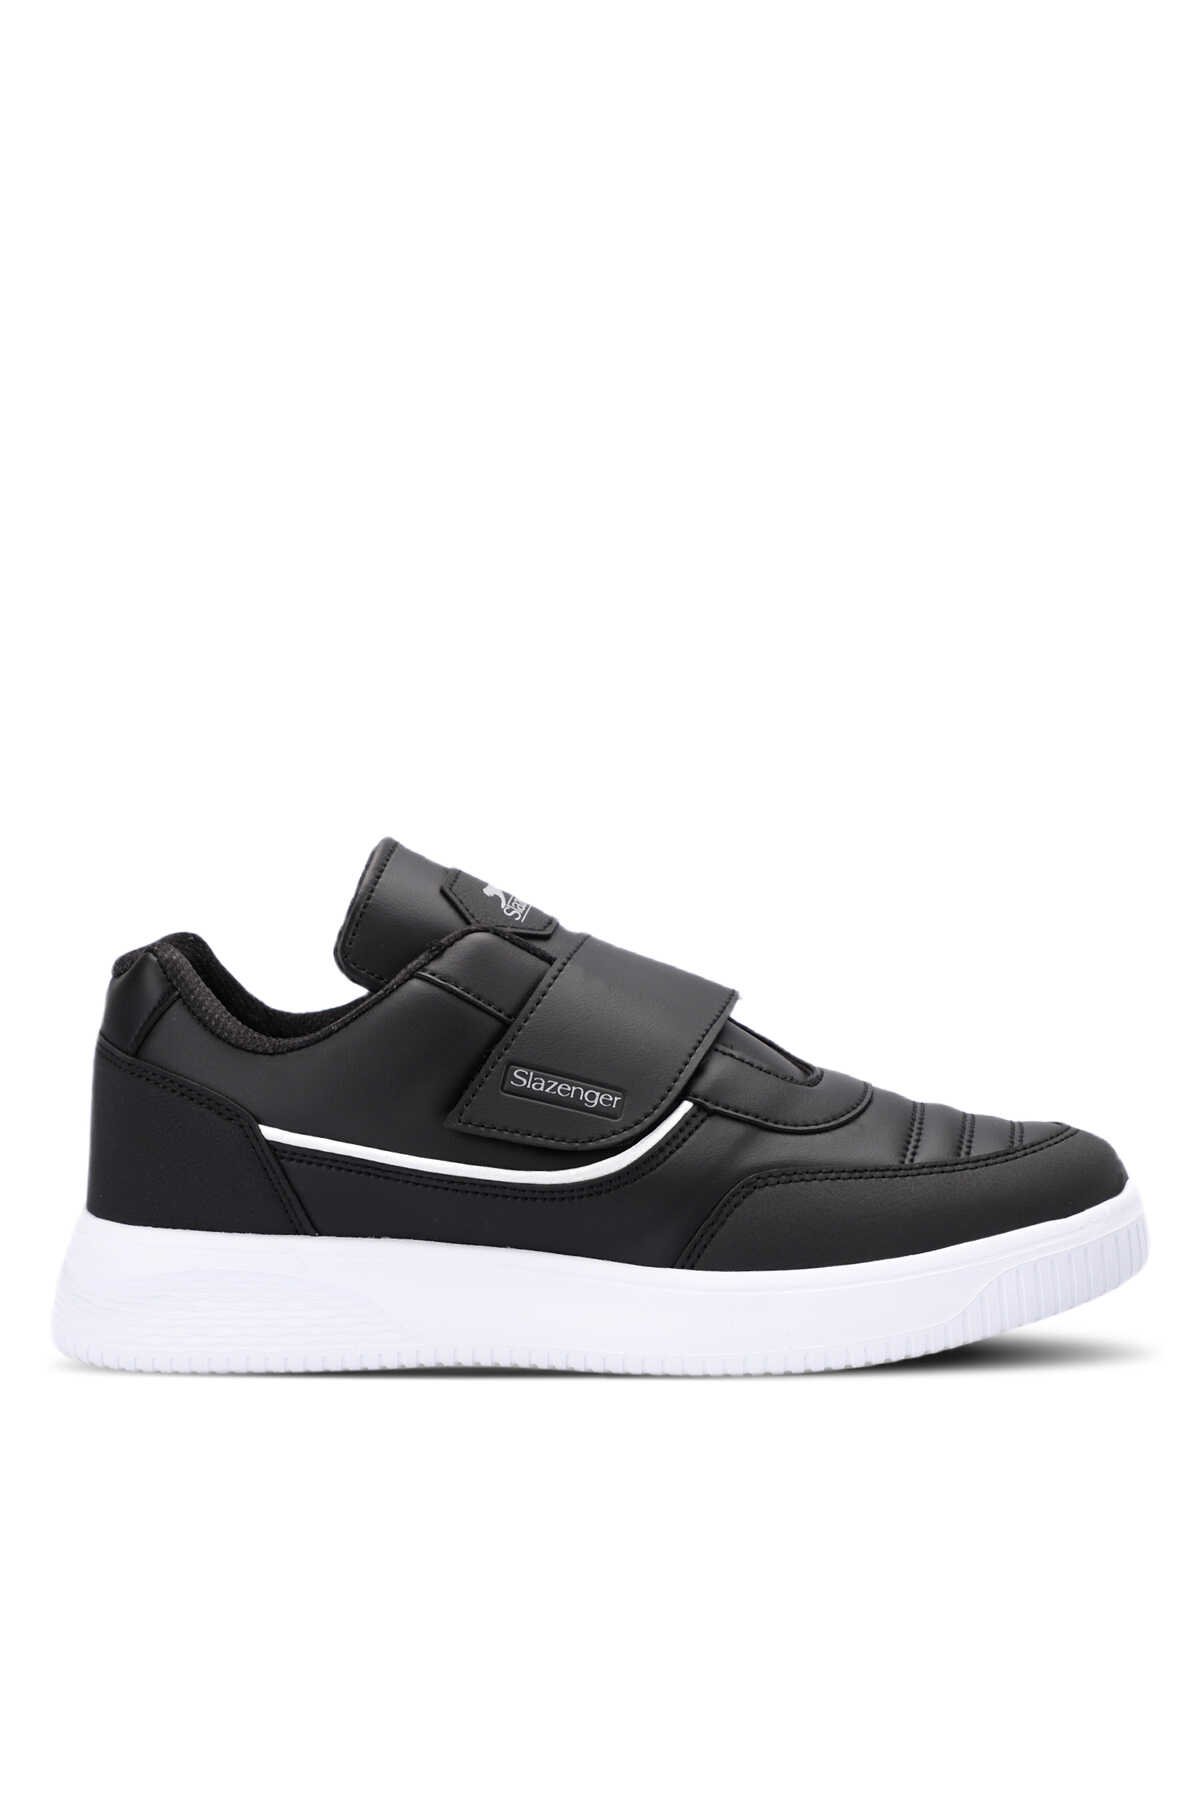 Slazenger - Slazenger MALL I Sneaker Erkek Ayakkabı Siyah / Beyaz